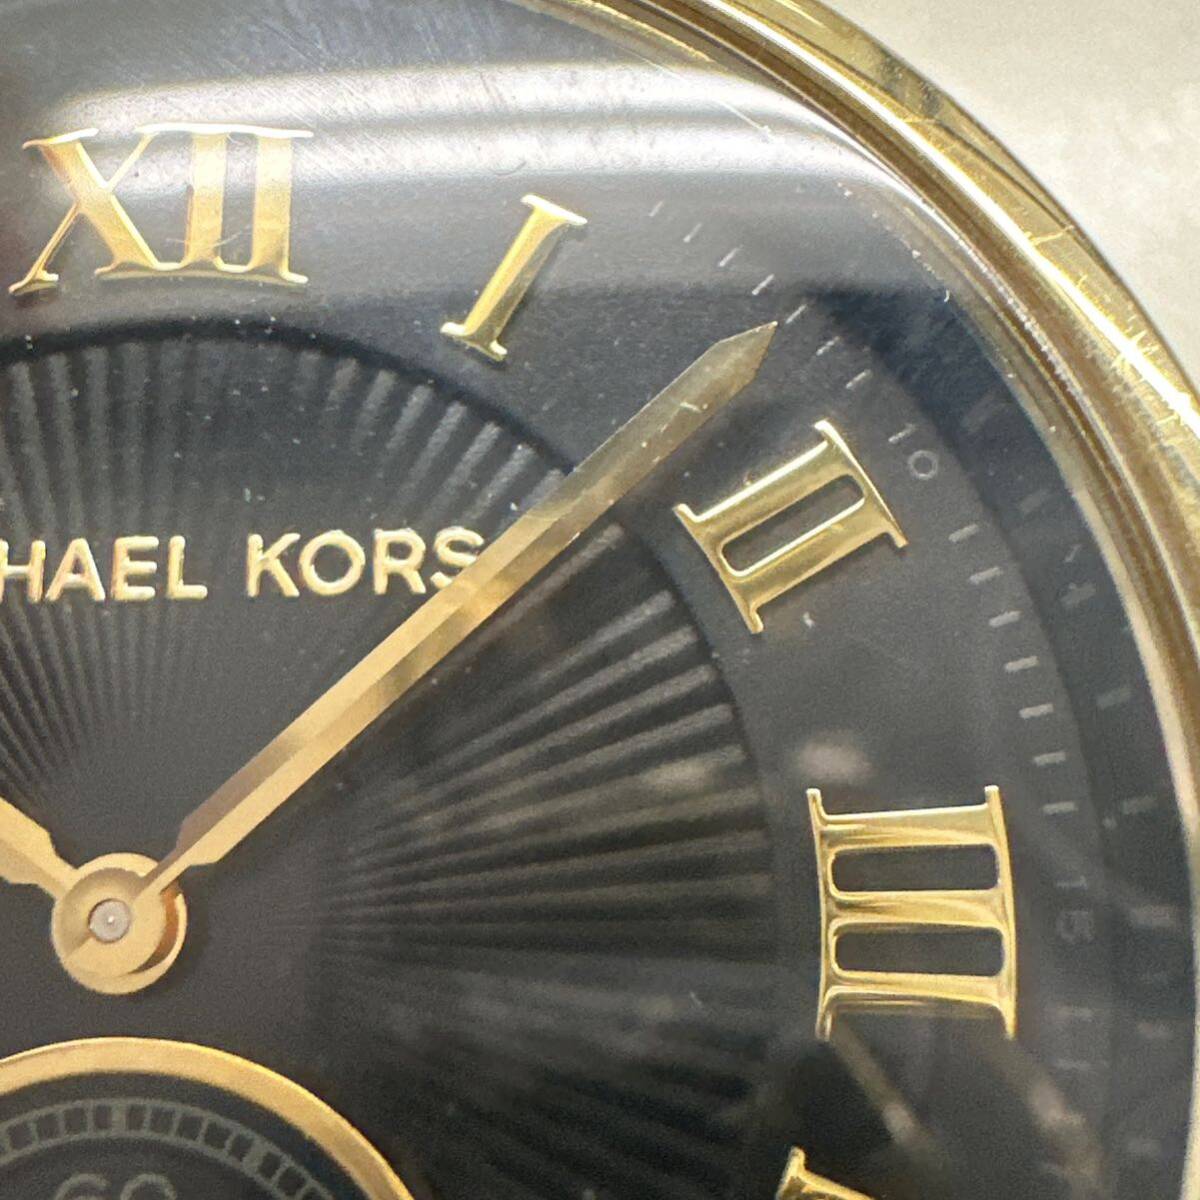 【TS0507】MICHEAL KORS マイケルコース クォーツ 腕時計 MK-5989 ゴールドカラー ファッション小物 服飾小物 コレクション_画像3